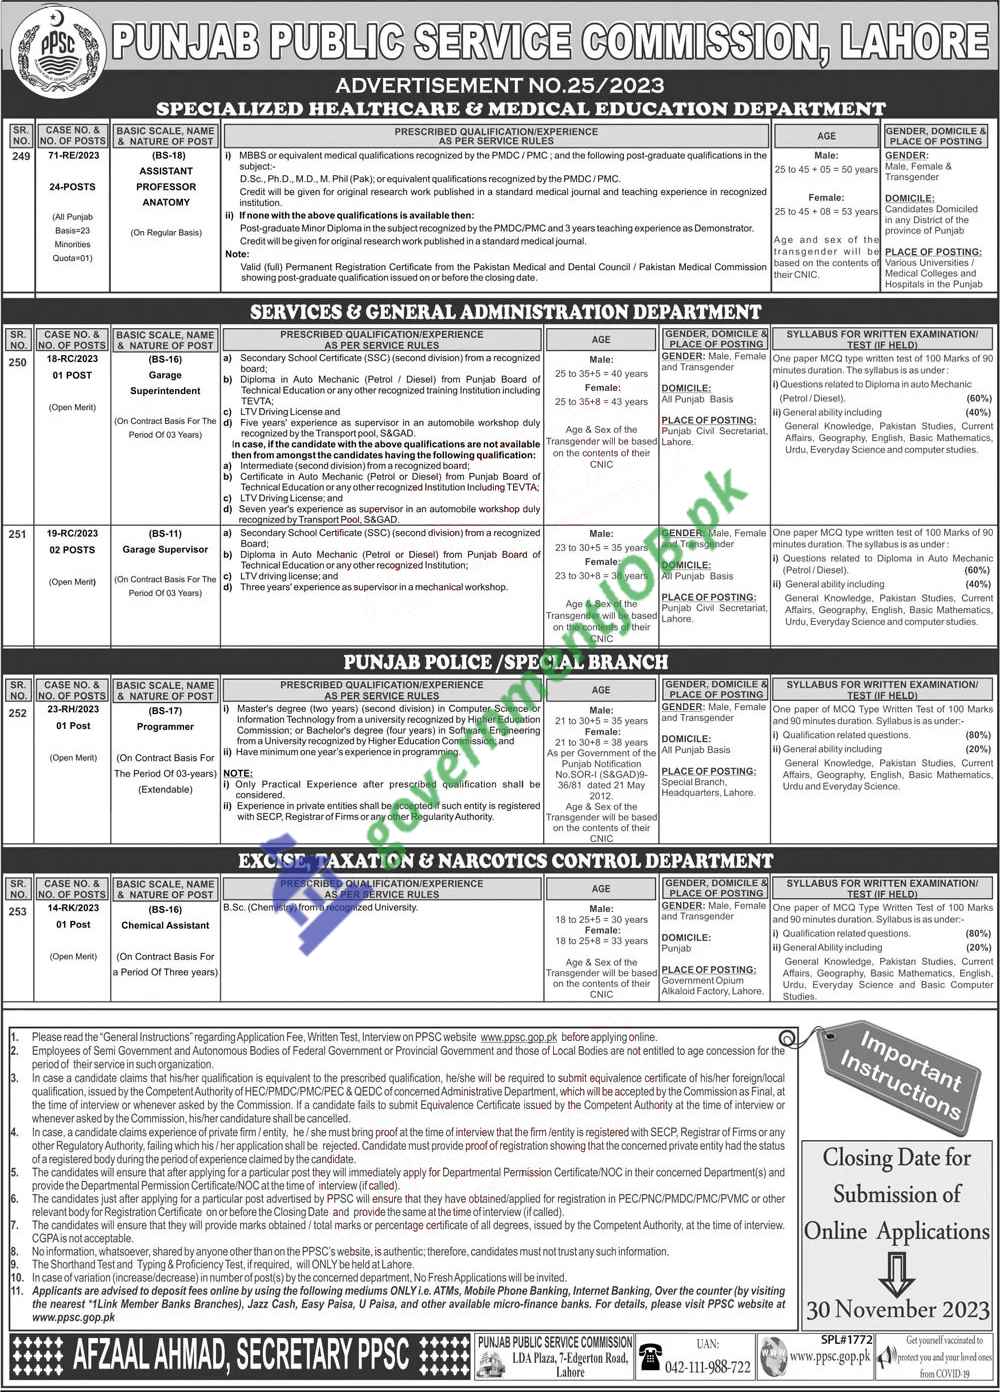 PPSC Job Advt No. 25/2023 - Punjab Public Service Commission Apply Online